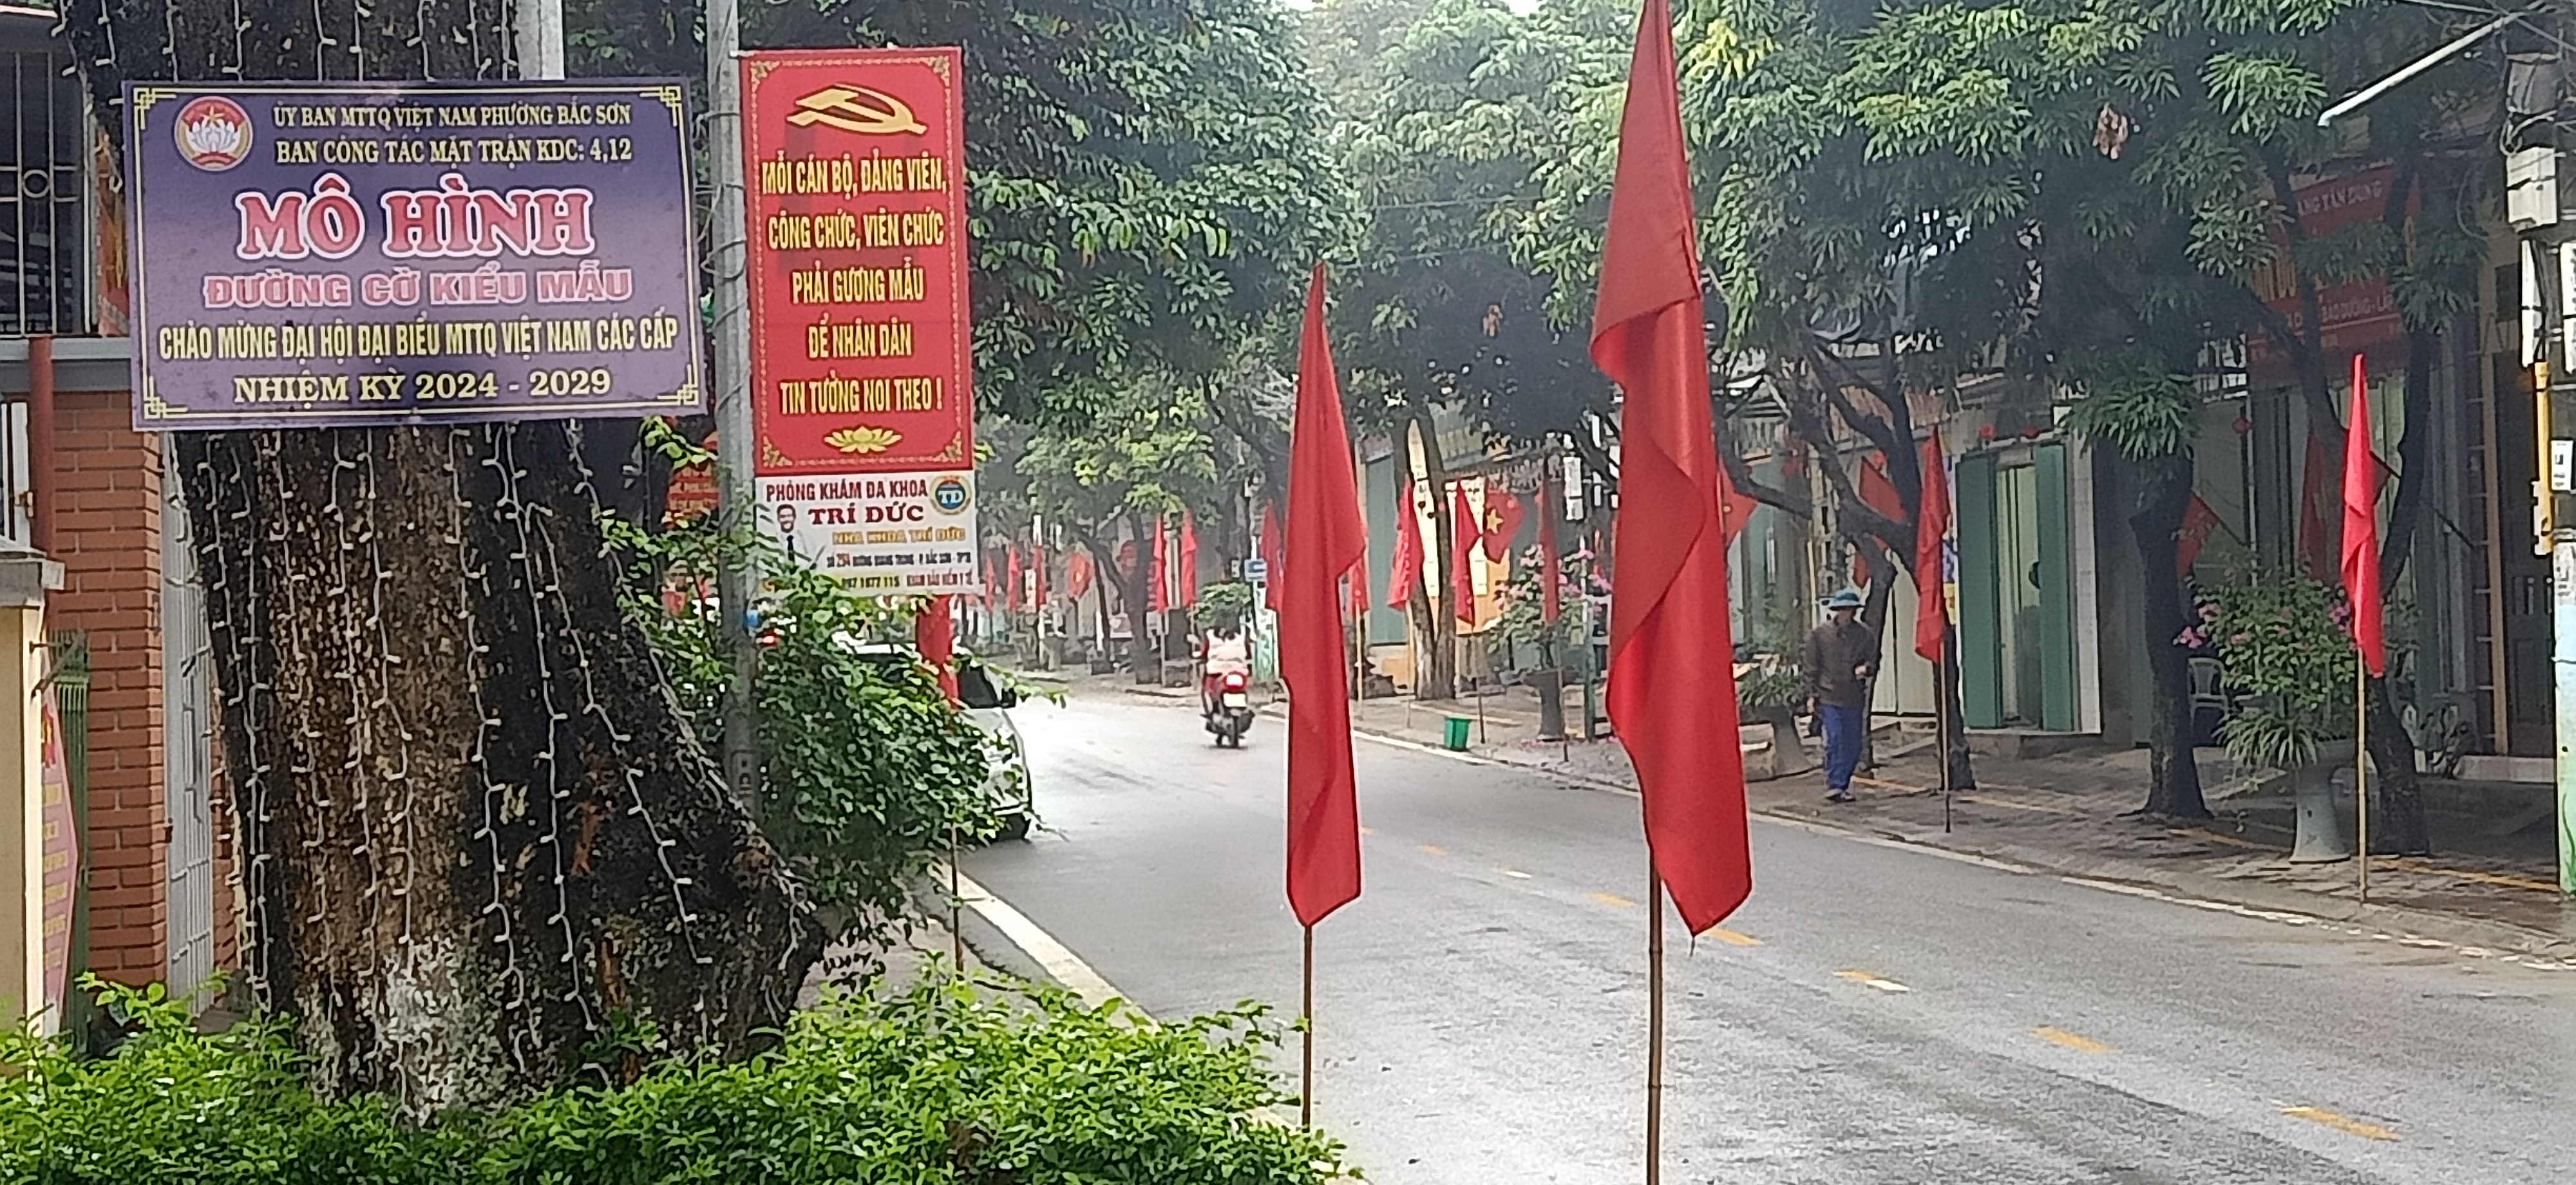 Ủy ban Mặt trận tổ quốc Việt nam phường Bắc Sơn ra mắt mô hình “Đường cờ kiểu mẫu”